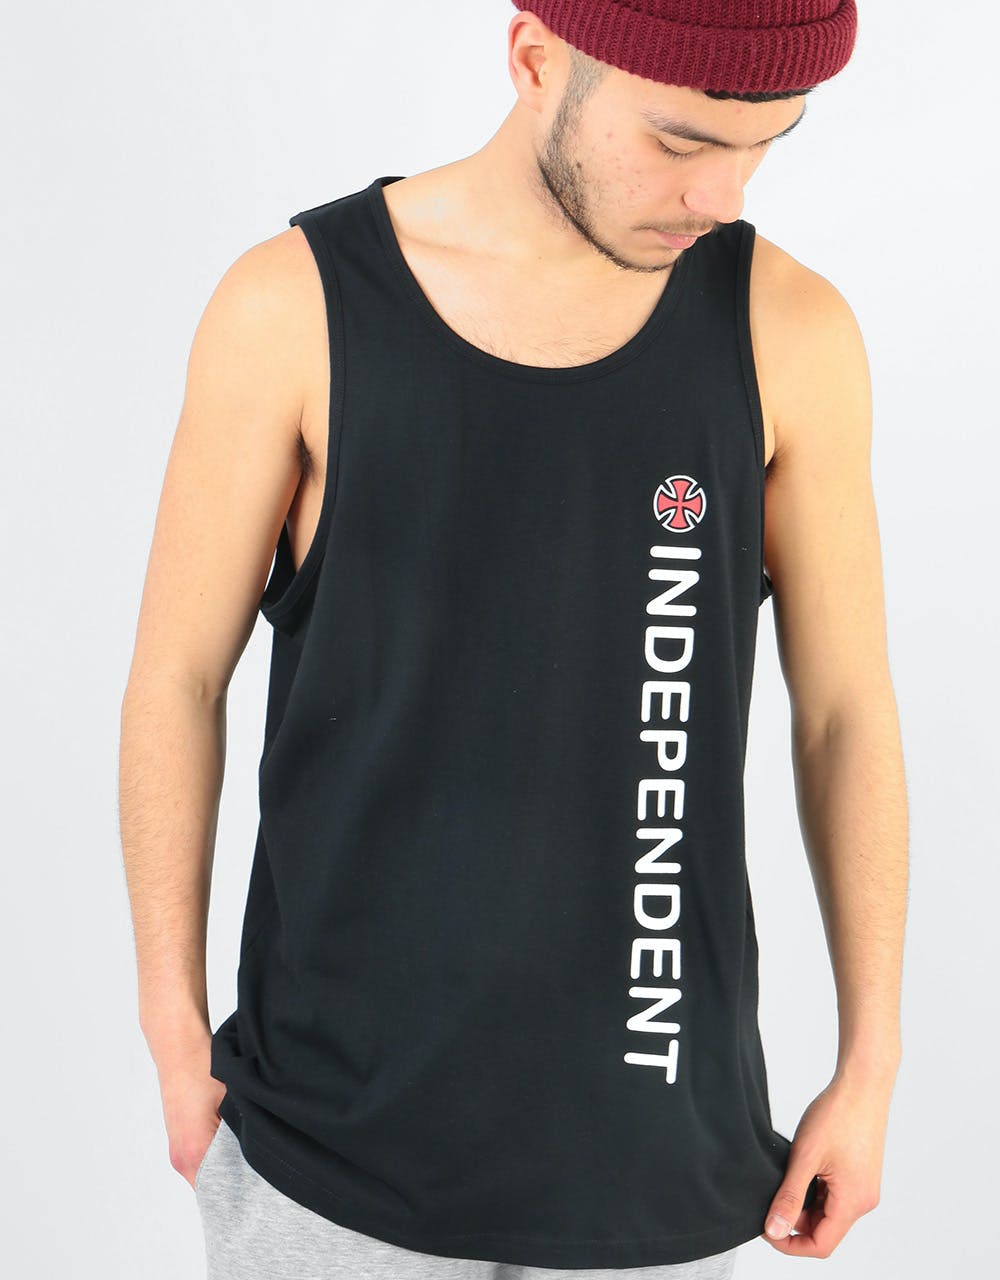 Independent Directional Vest - Black